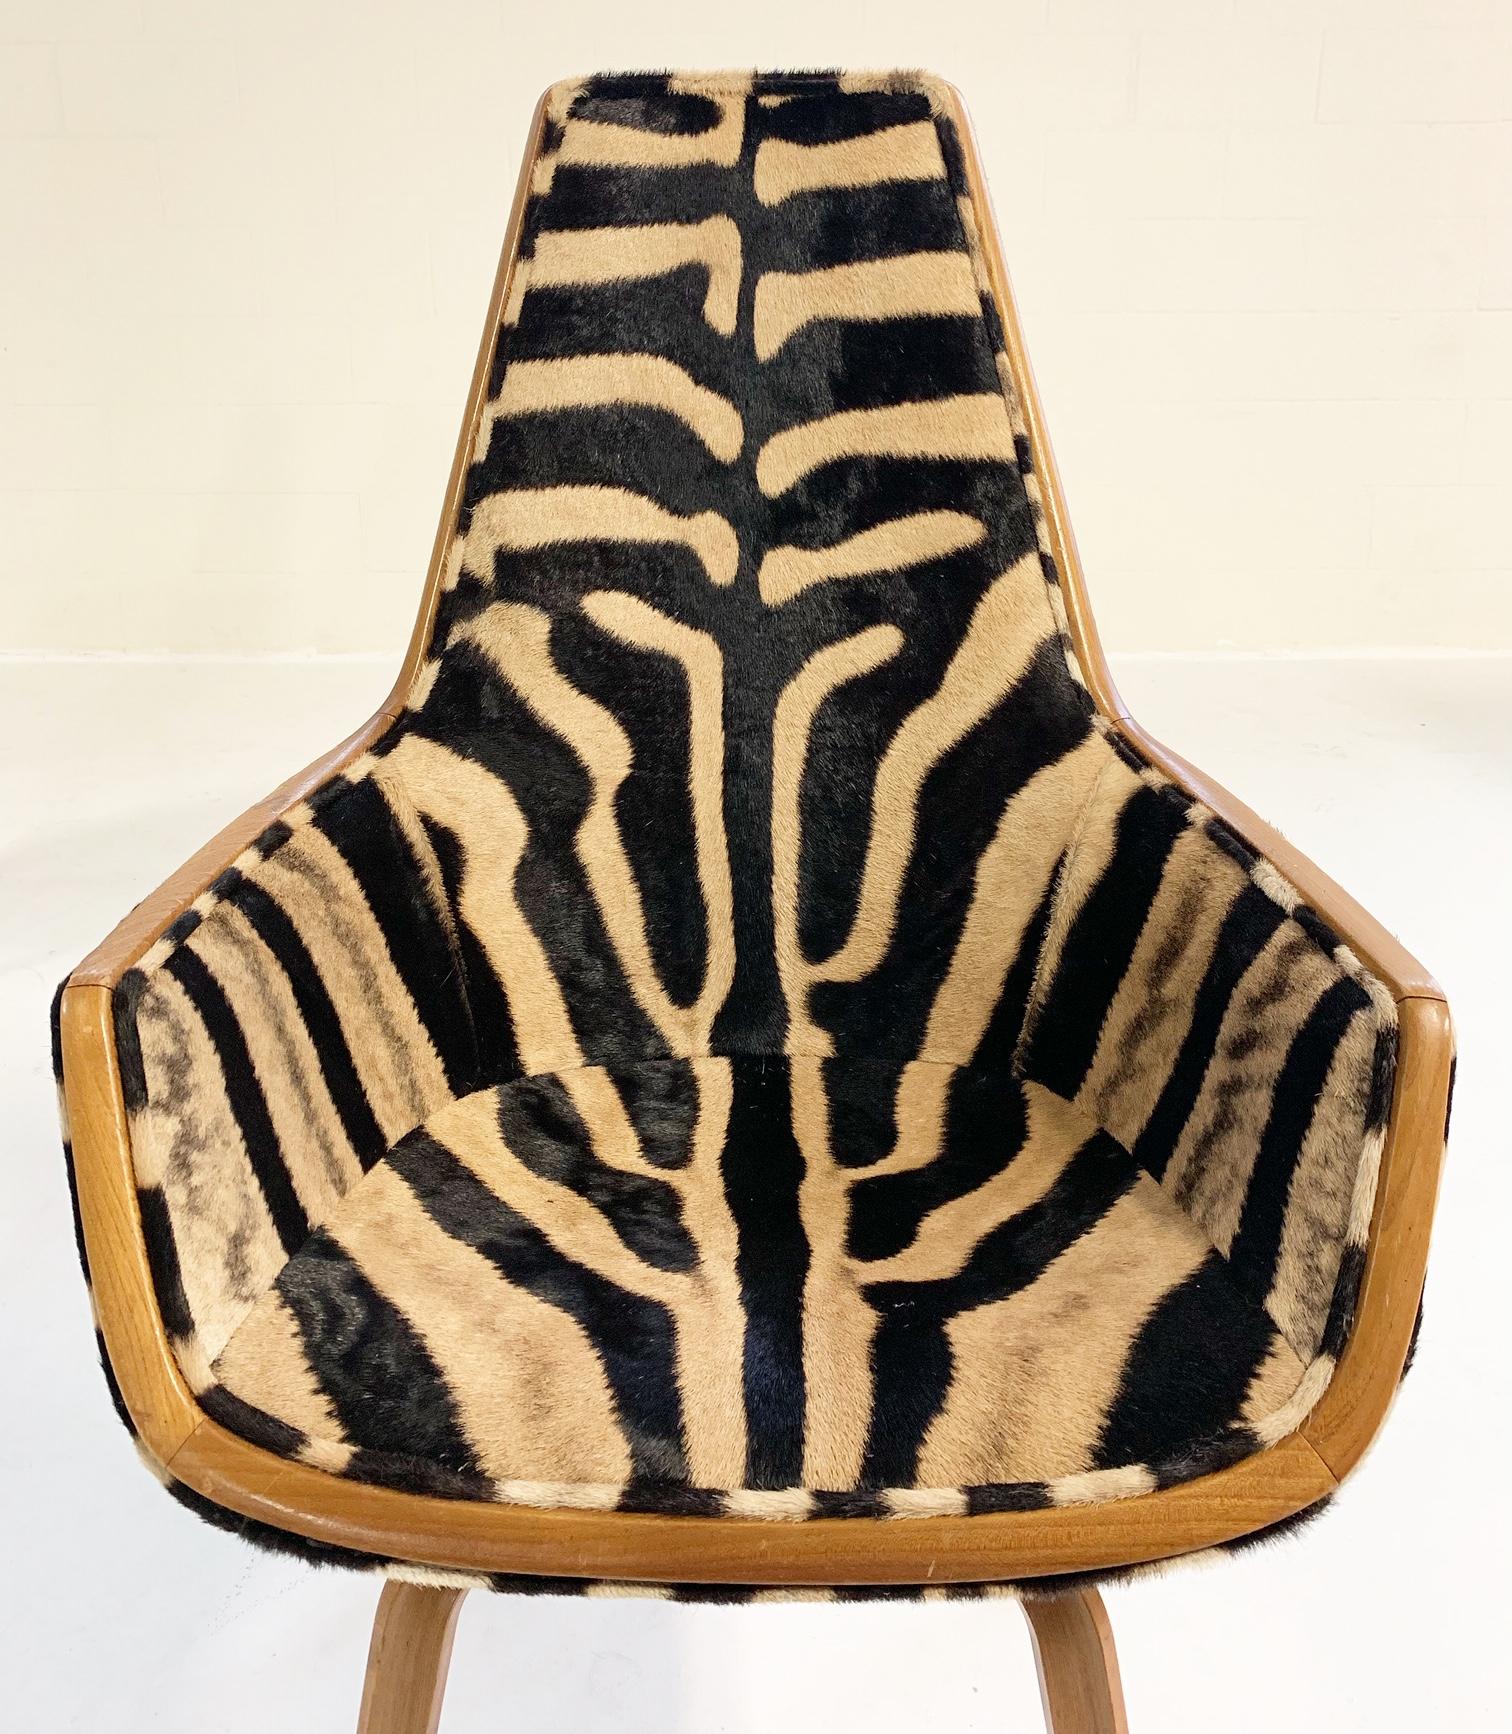 Mid-20th Century Rare Arne Jacobsen for Fritz Hansen Giraffe Chairs Restored in Zebra Hide, Pair